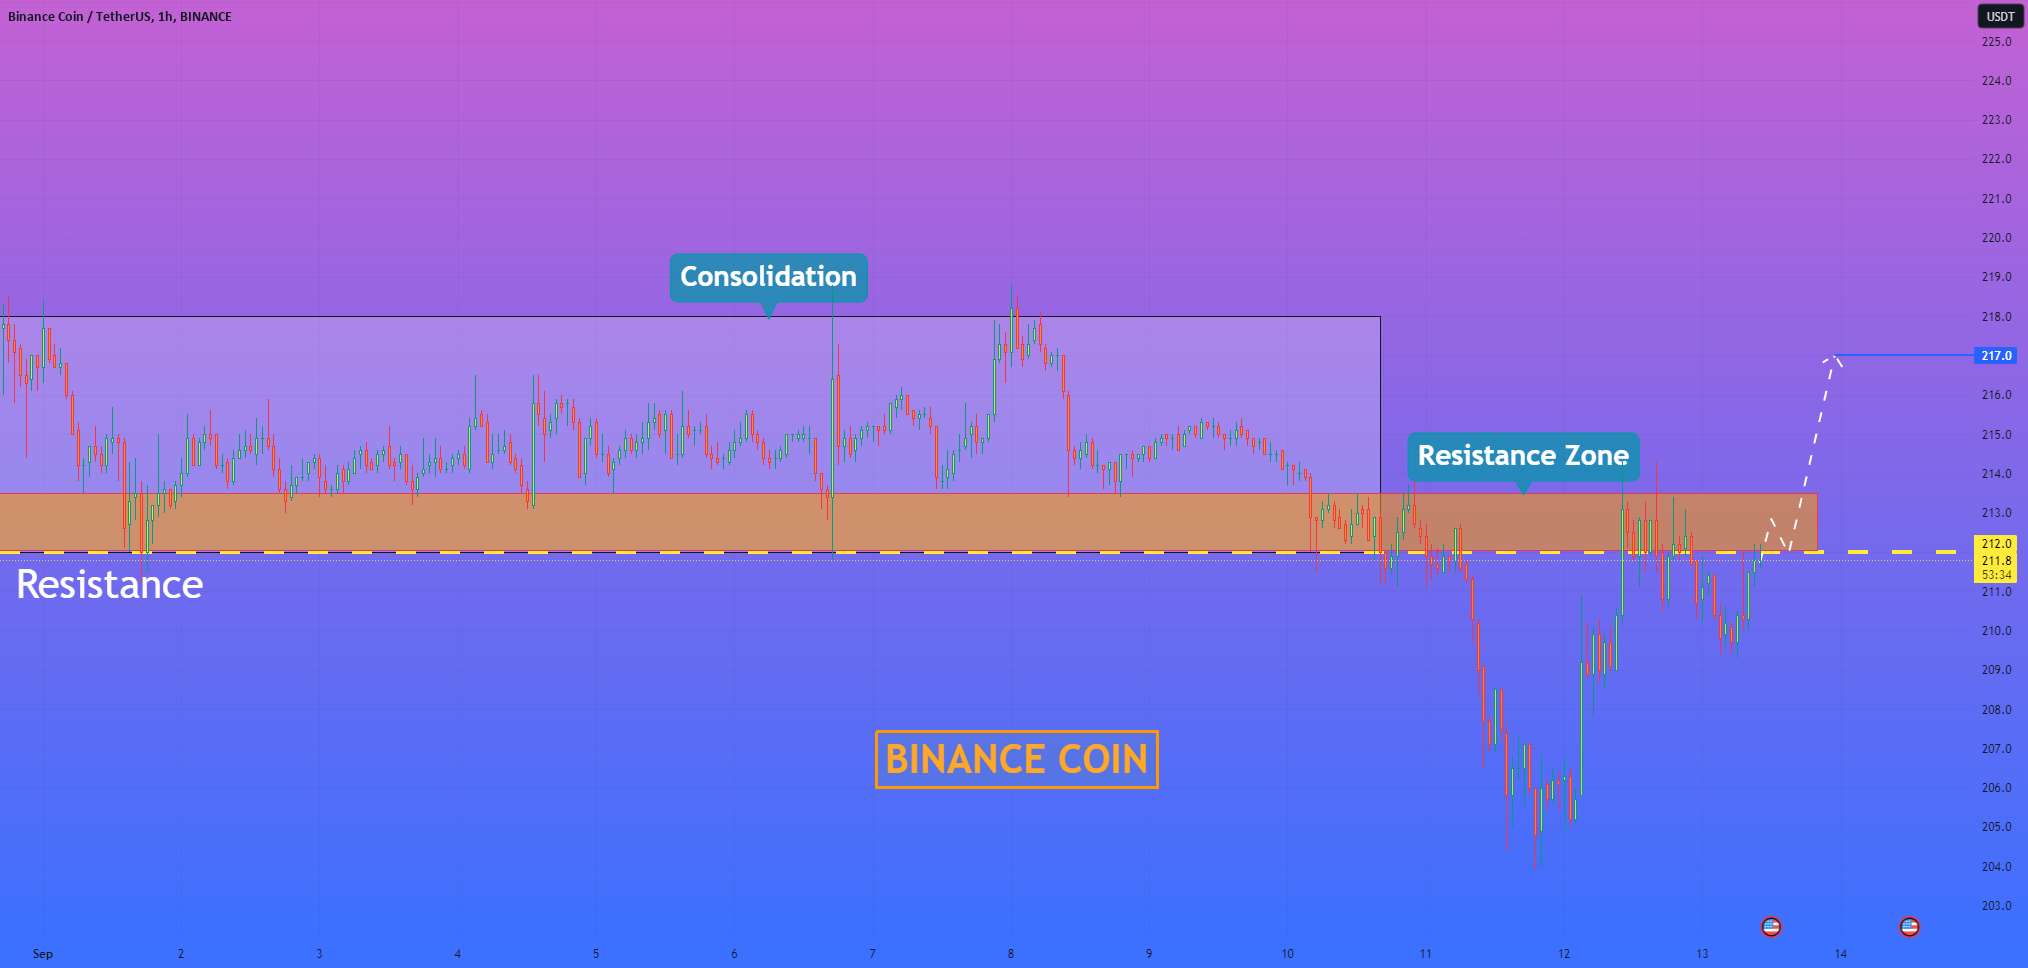  تحلیل بایننس کوین - هلن پی. I Binance Coin می تواند به سمت بالا جهش کند و به منطقه مقاومت برسد